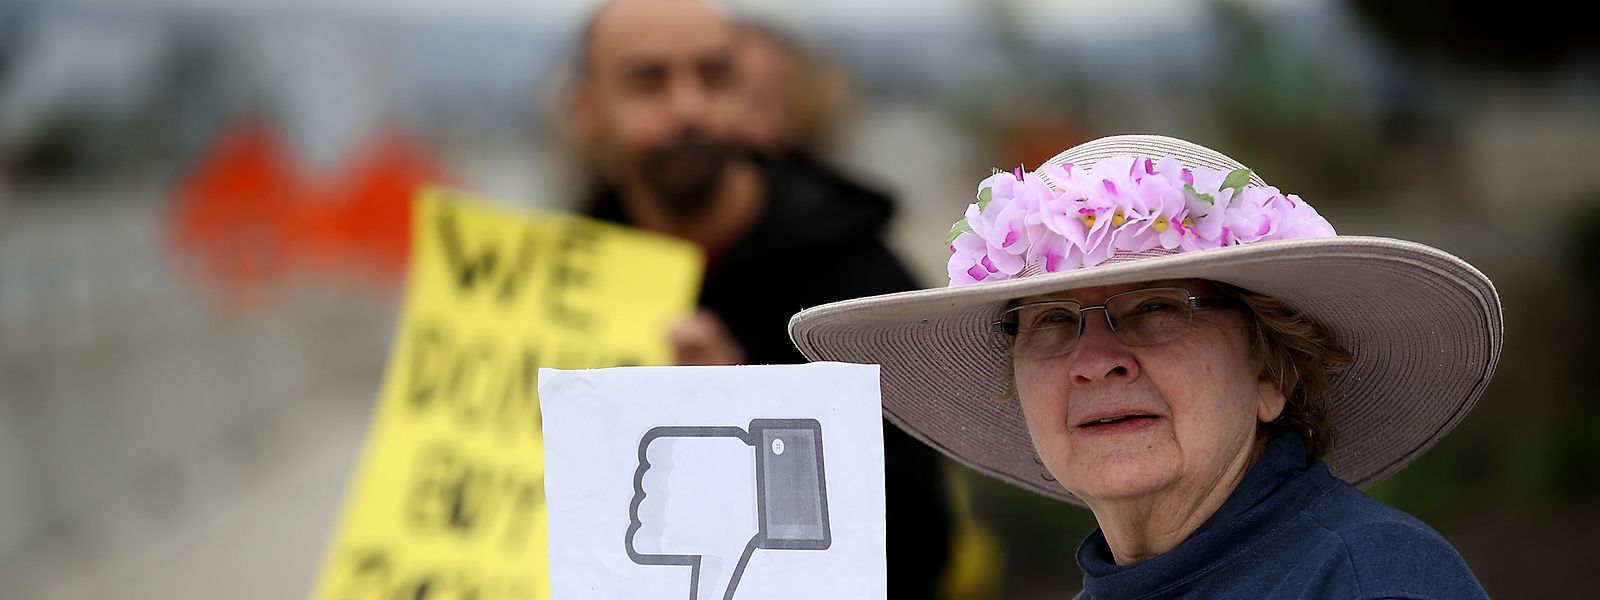 Eine Protestgruppe mit dem Namen "Raging Grannies" ("wütende Großmütter") protestierte vergangene Woche vor dem Facebook-Hauptsitz in Menlo Park.